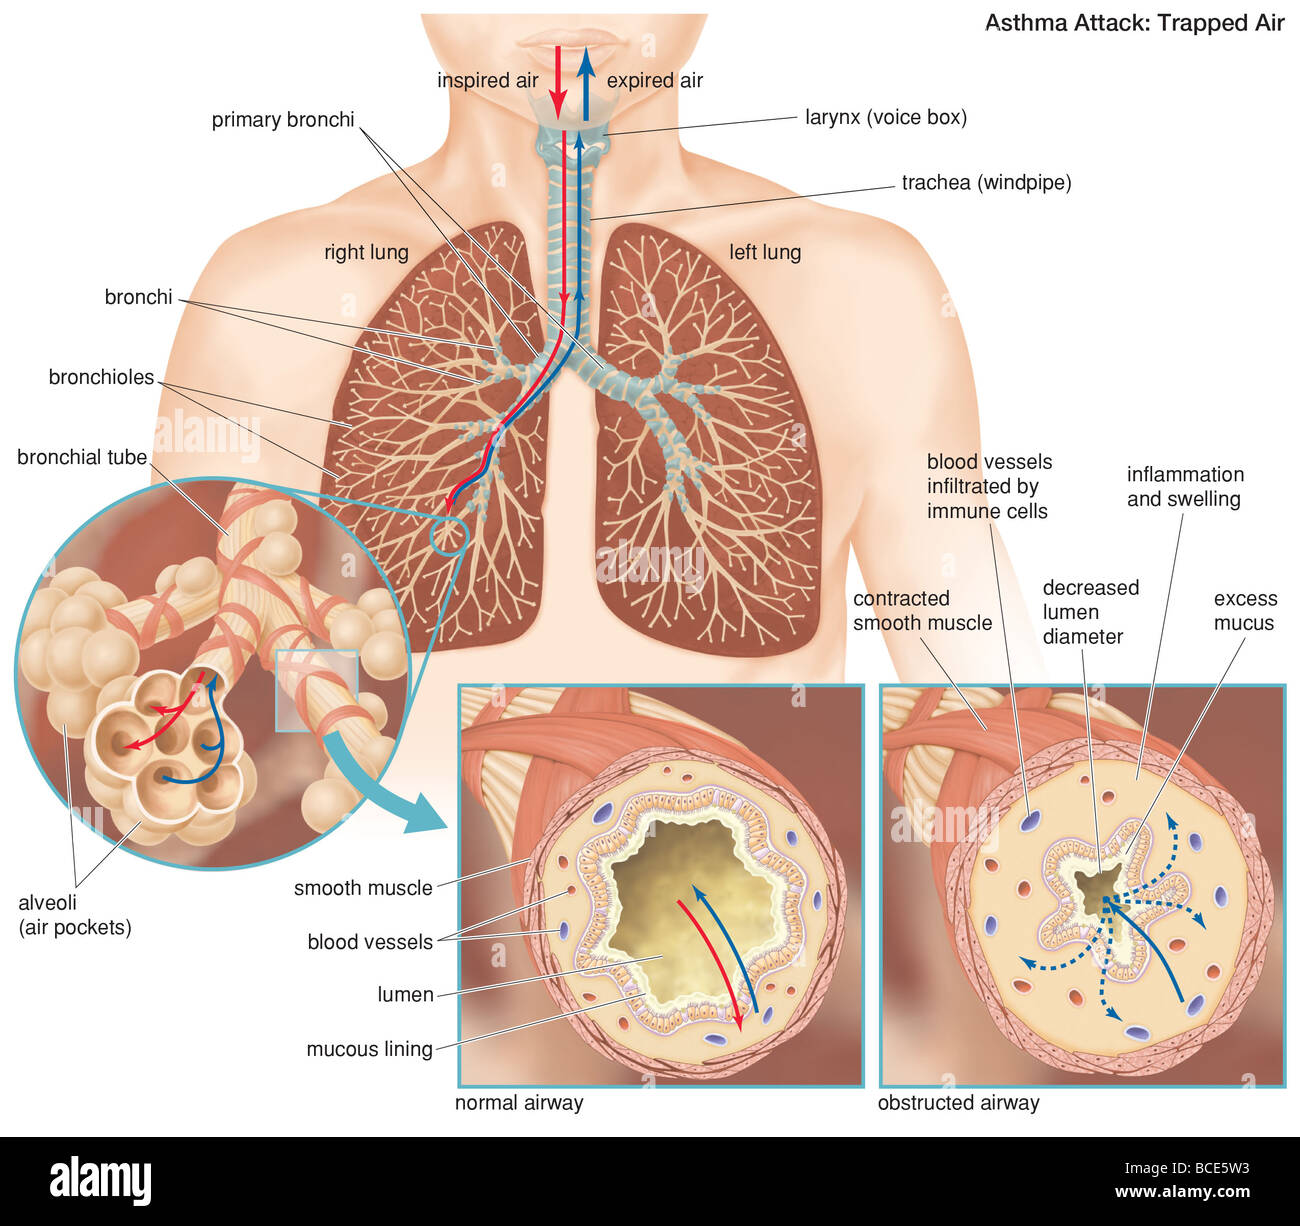 Die Anatomie des einen Asthma-Anfall, demonstriert den Unterschied zwischen einer normalen und einer verstopfte Atemwege. Stockfoto